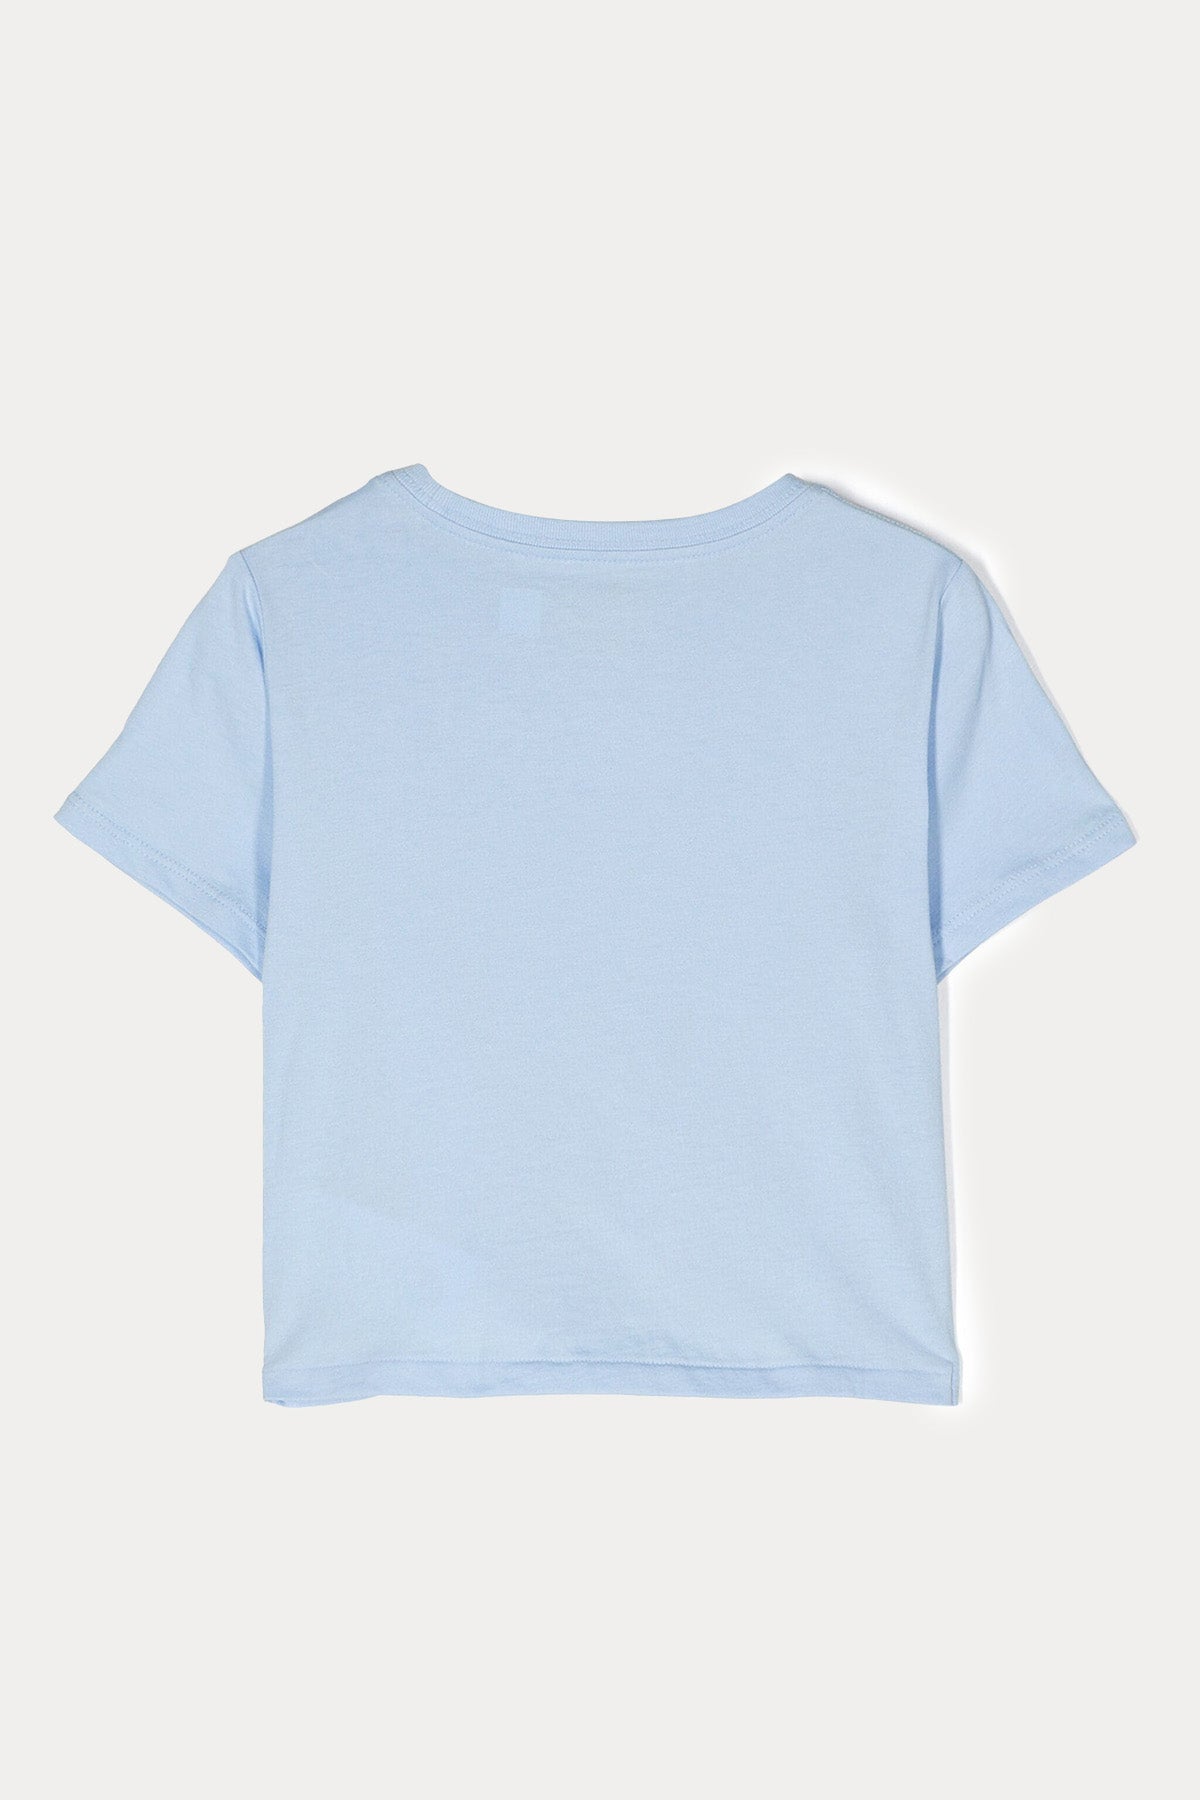 Polo Ralph Lauren Kids 3-5 Yaş Kız Çocuk Büzgülü Crop T-shirt